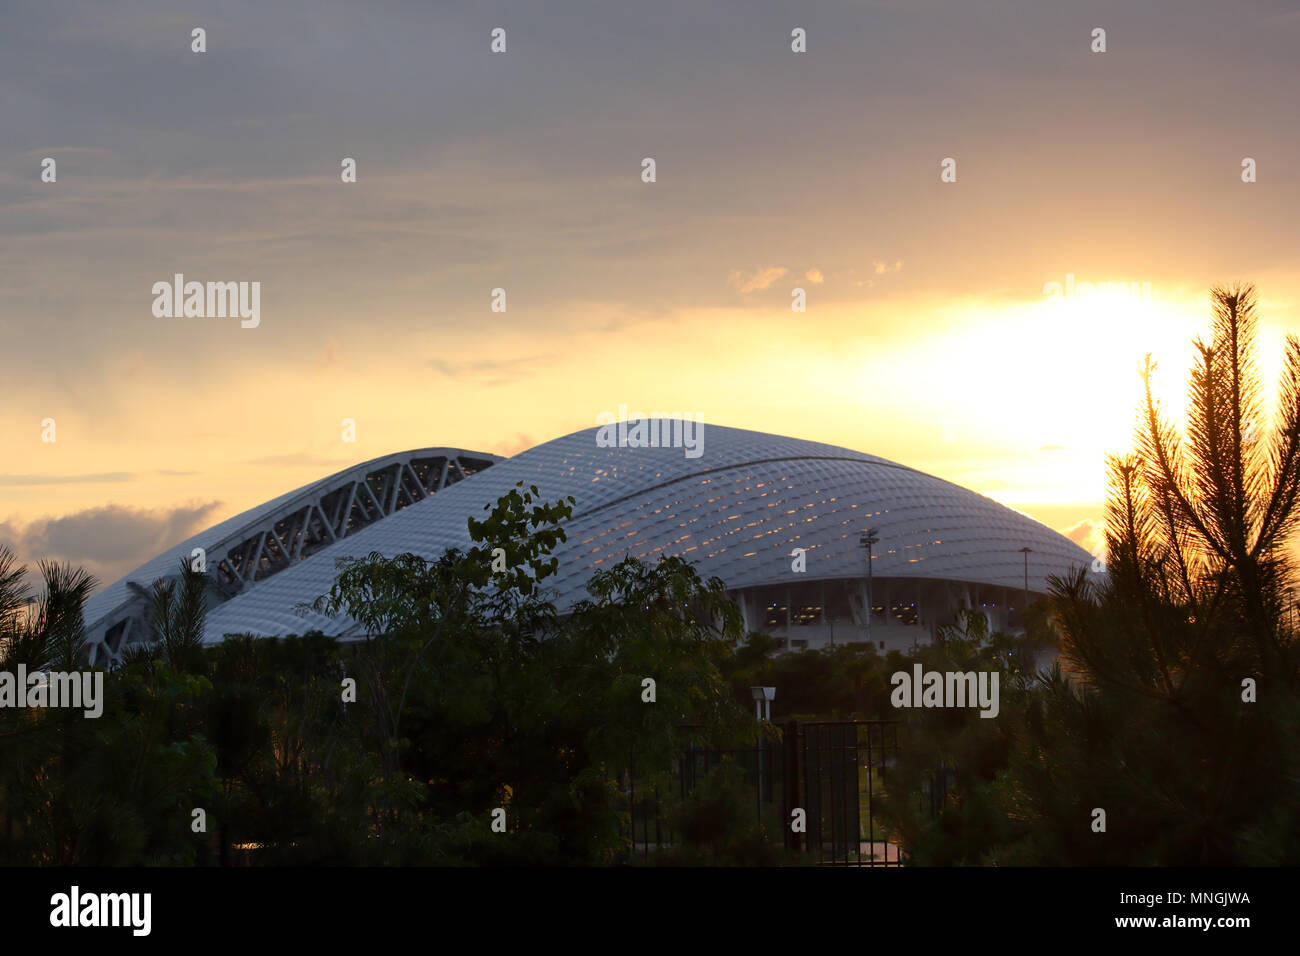 Sochi Fisht arena sunset panoramic 16:9 horizontal photo Stock Photo